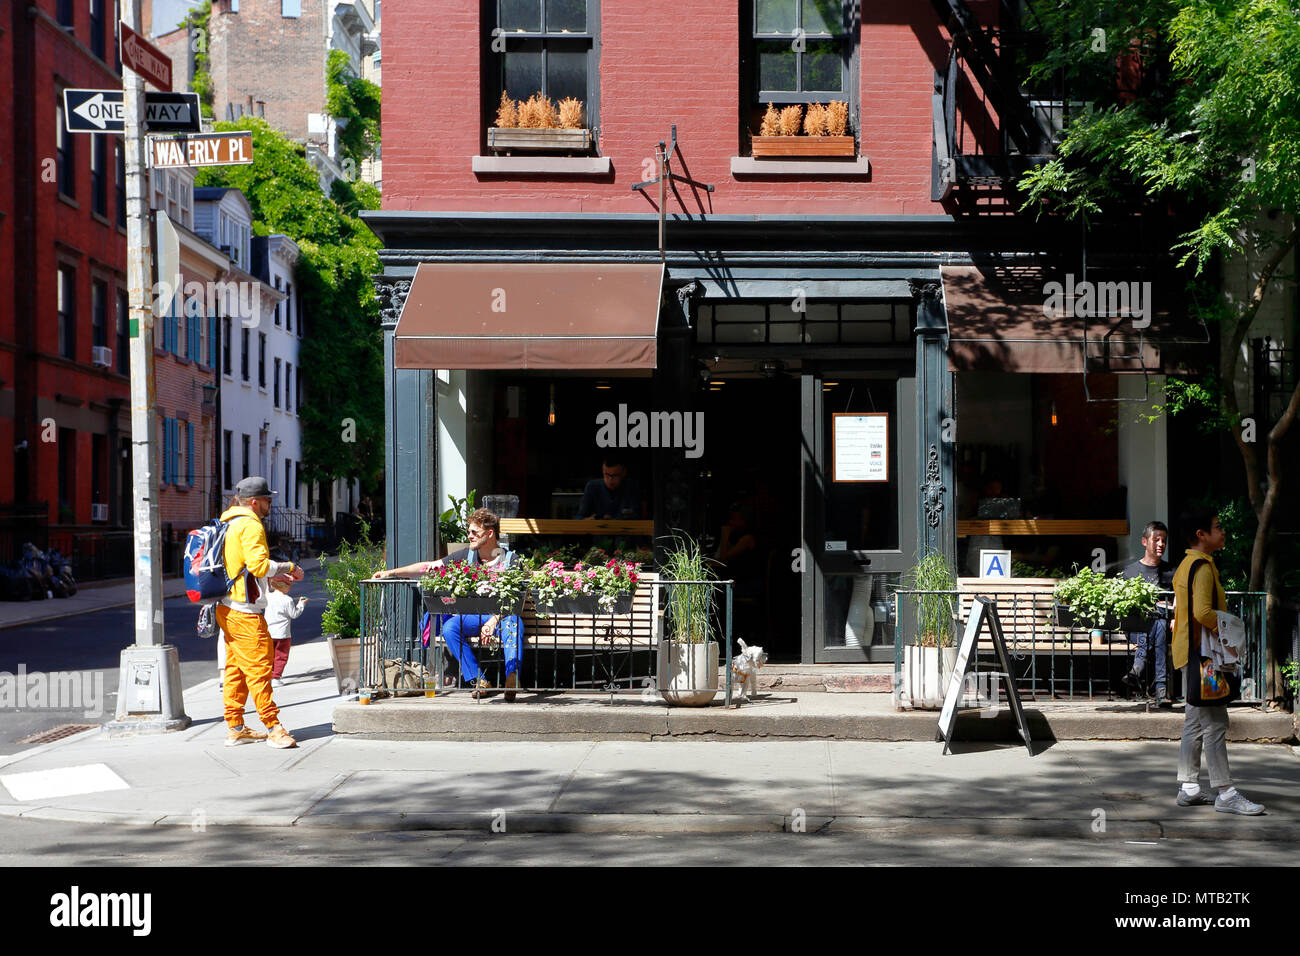 Joe Coffee, 141 Waverly Pl, New York, NY devanture extérieure d'un coffee shop, café-terrasse et dans le quartier de Greenwich Village de Manhattan. Banque D'Images